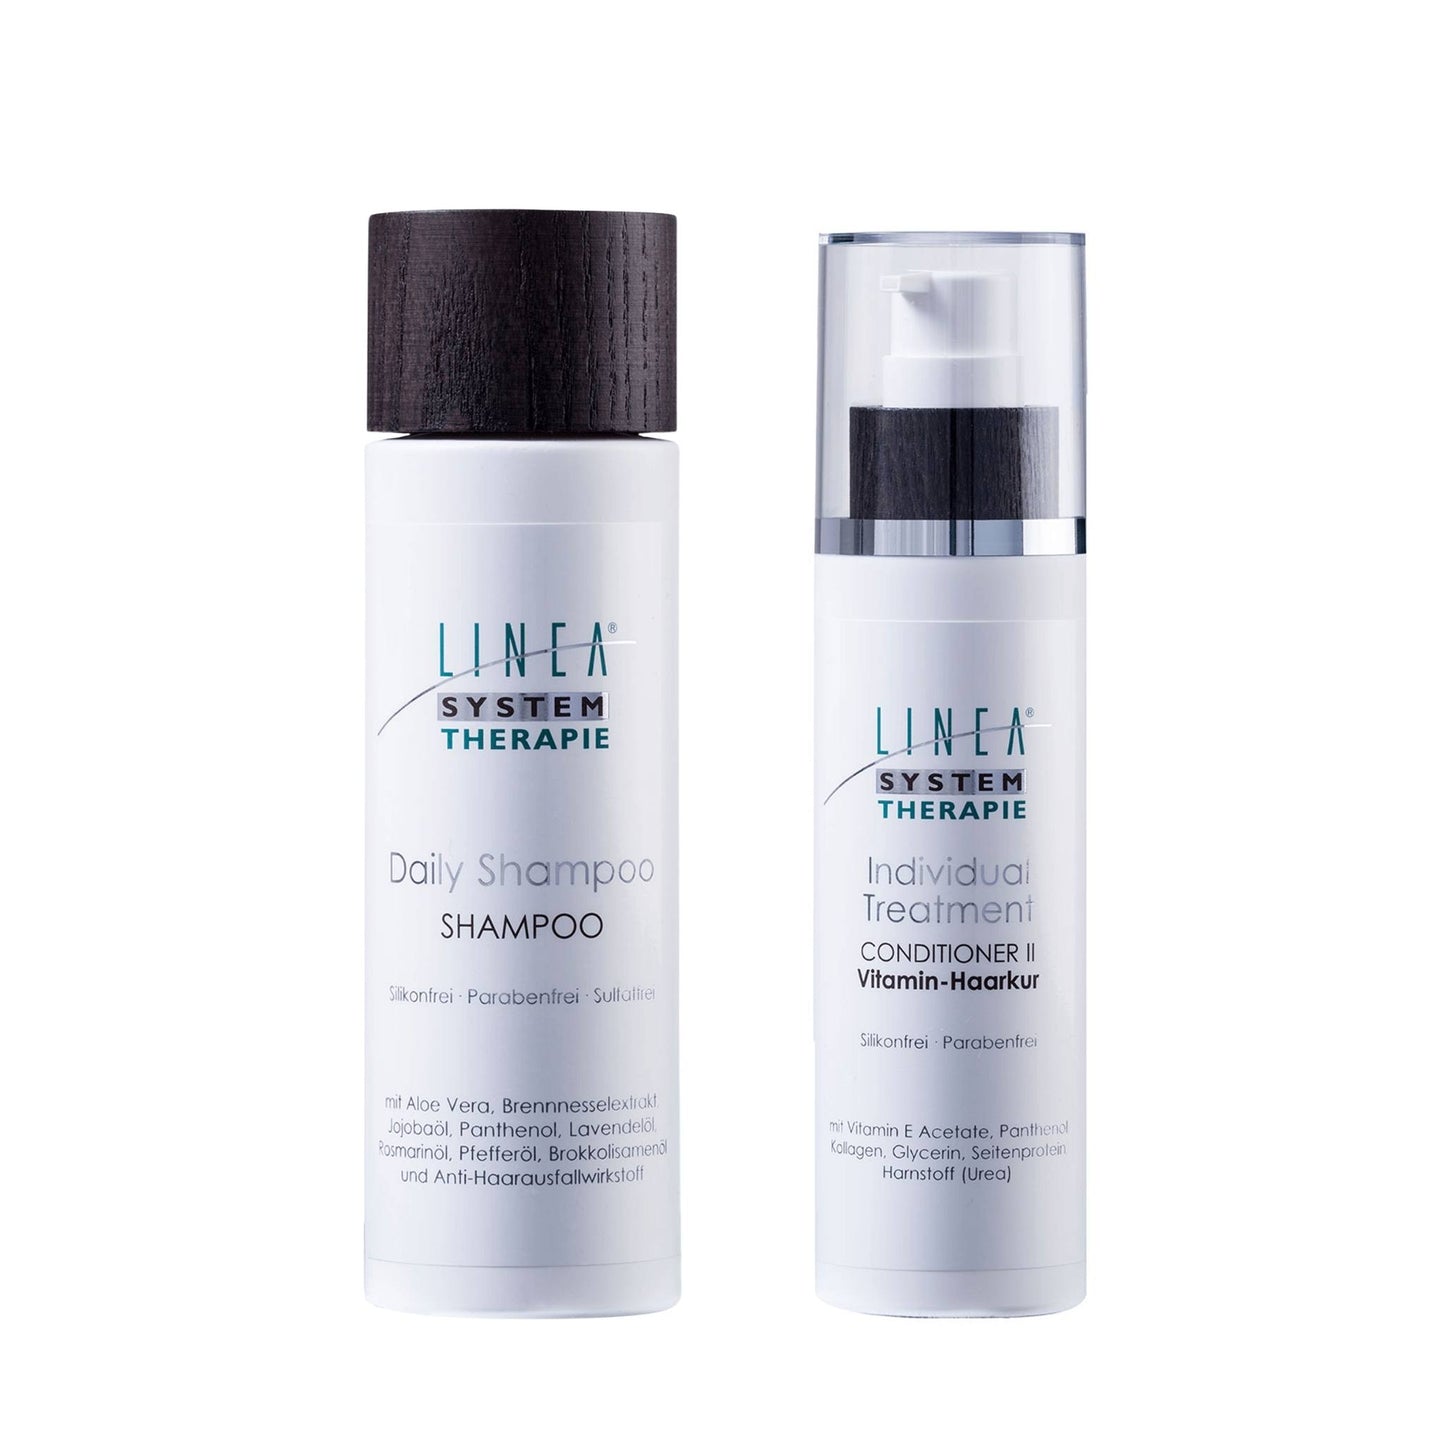 LINEA Set Shampoo & Vitamin Haarkur